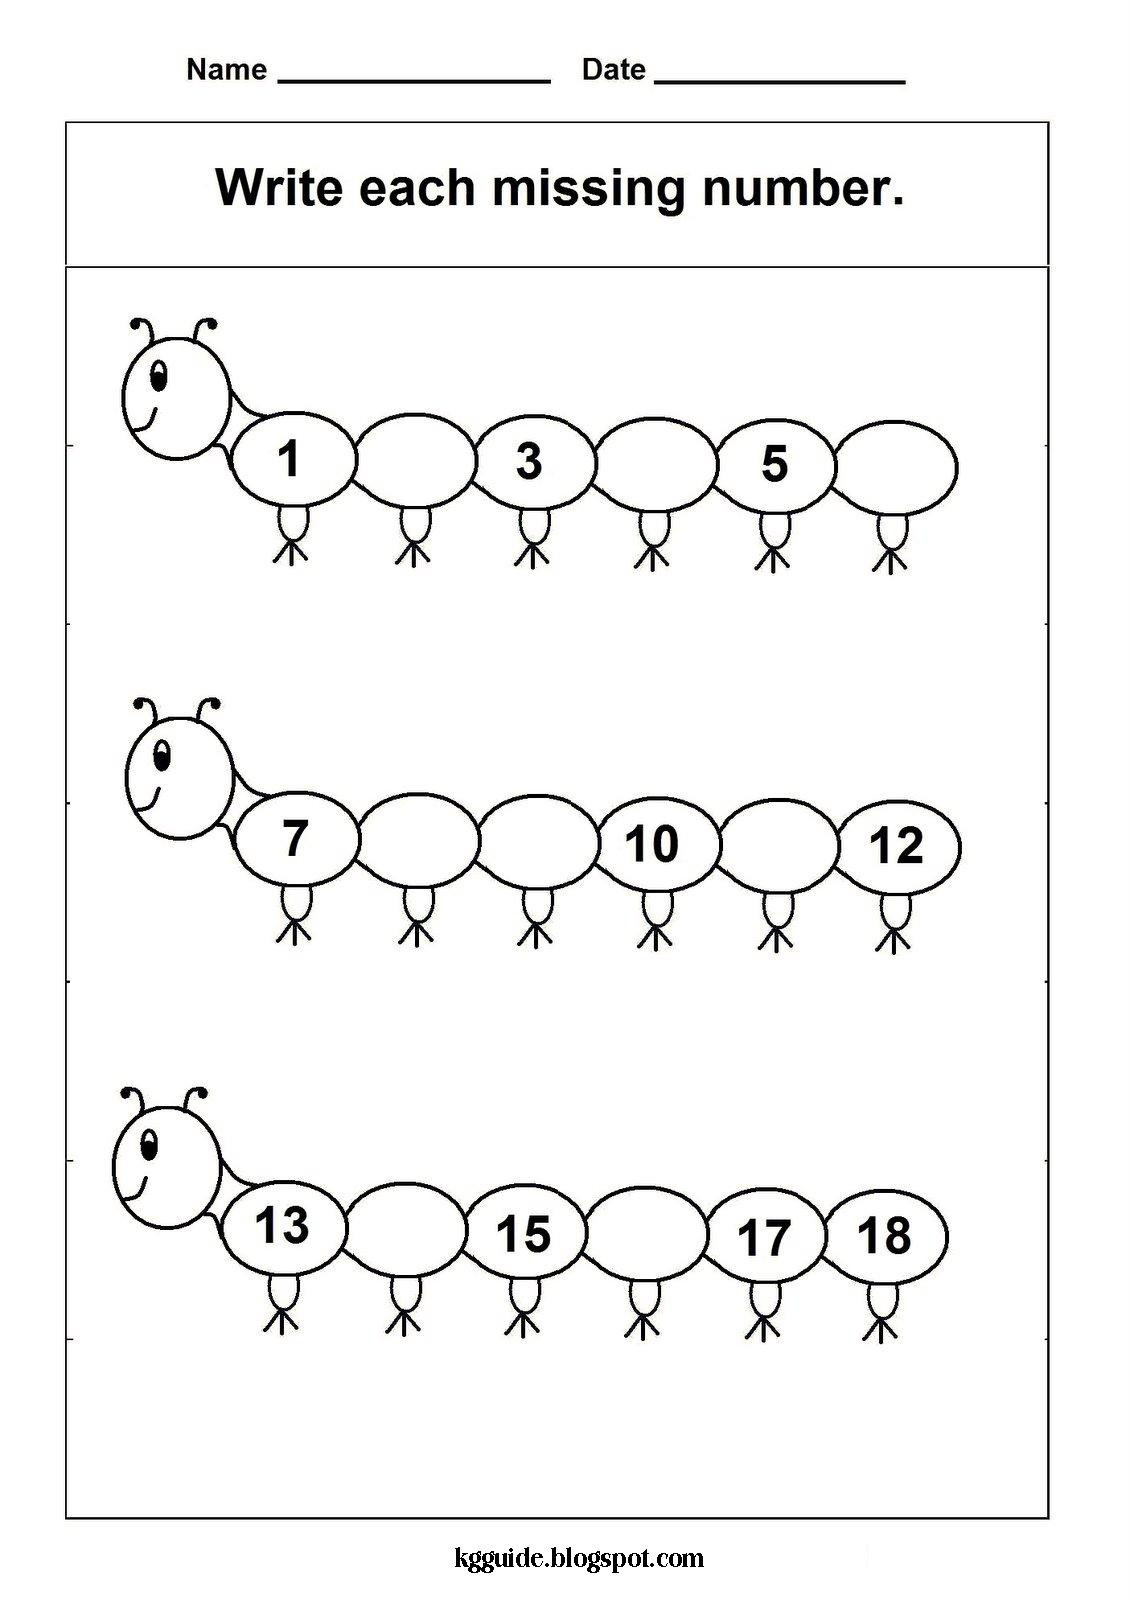 Kindergarten Number Line Worksheet Missing Number Worksheet New 330 Missing Numbers On Number